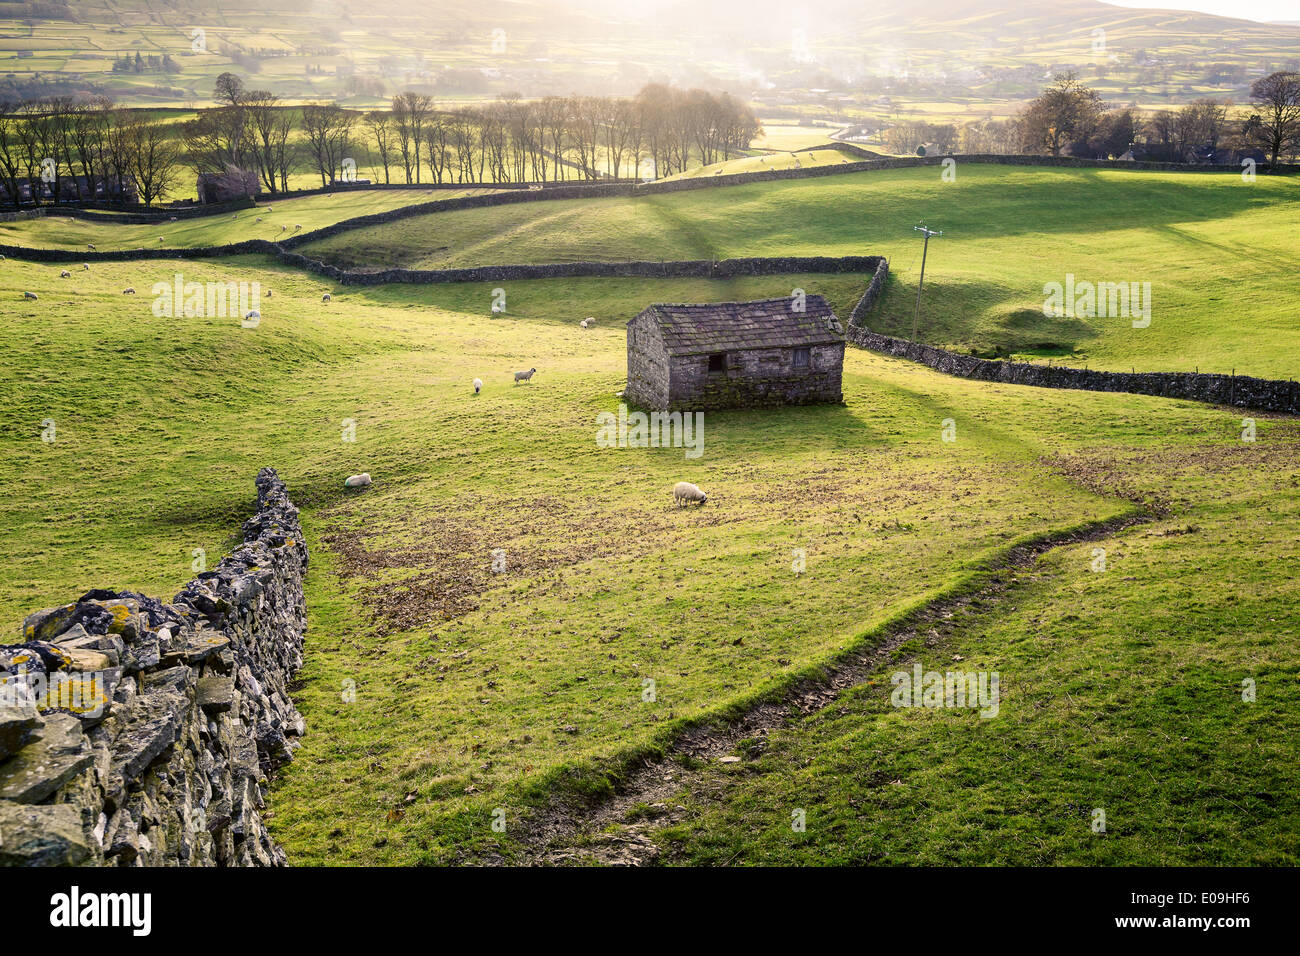 Un champ avec des moutons, muret de pierres sèches et une grange en pierre traditionnelle se rapproche de Hawes dans Wensleydale, Angleterre. Banque D'Images